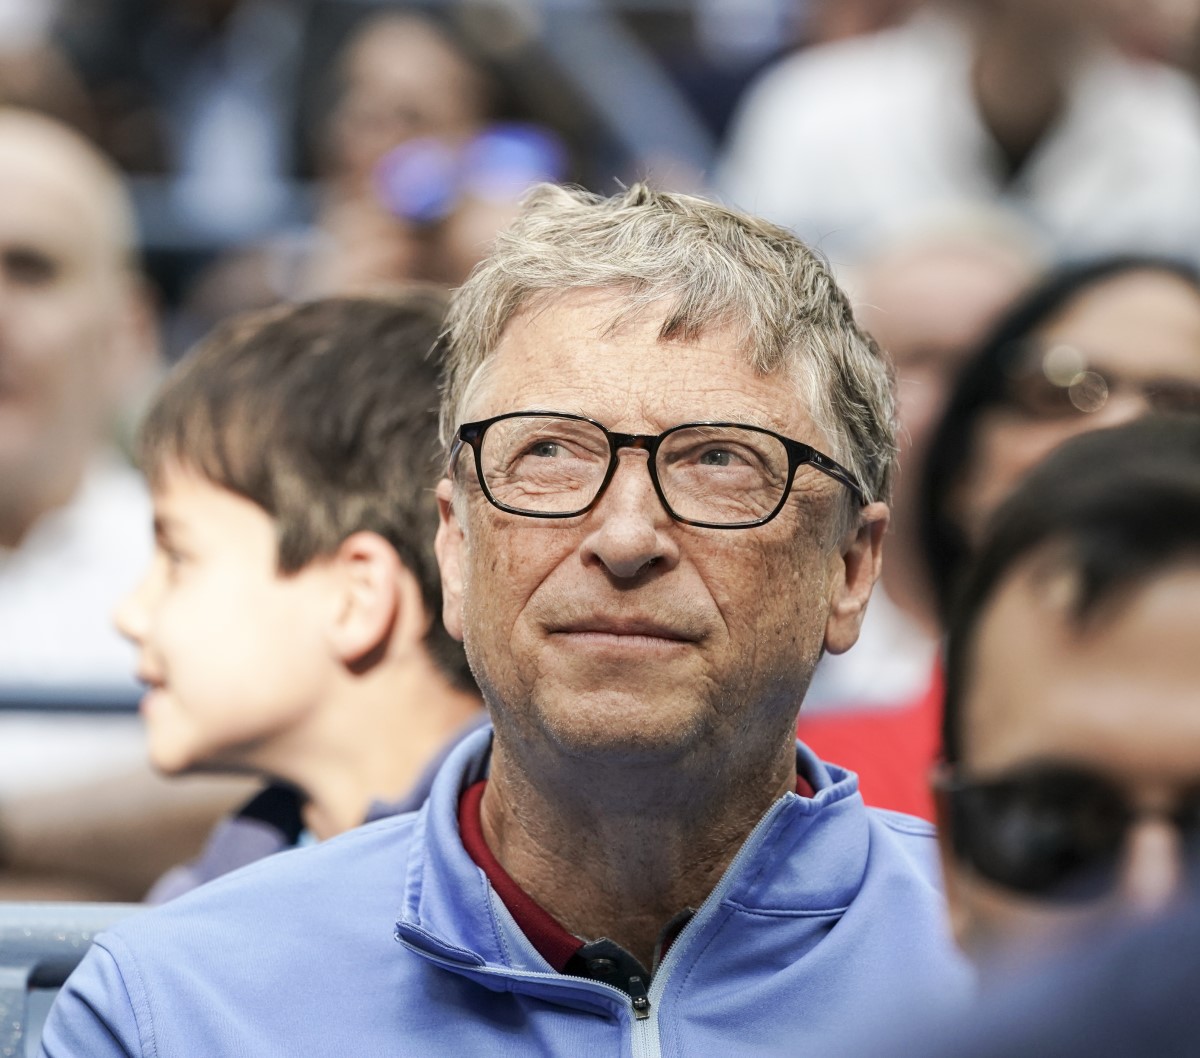 Bill Gates koronavirusari buruzko bere pentsamenduak ditu. Gida bat argitaratu zuen